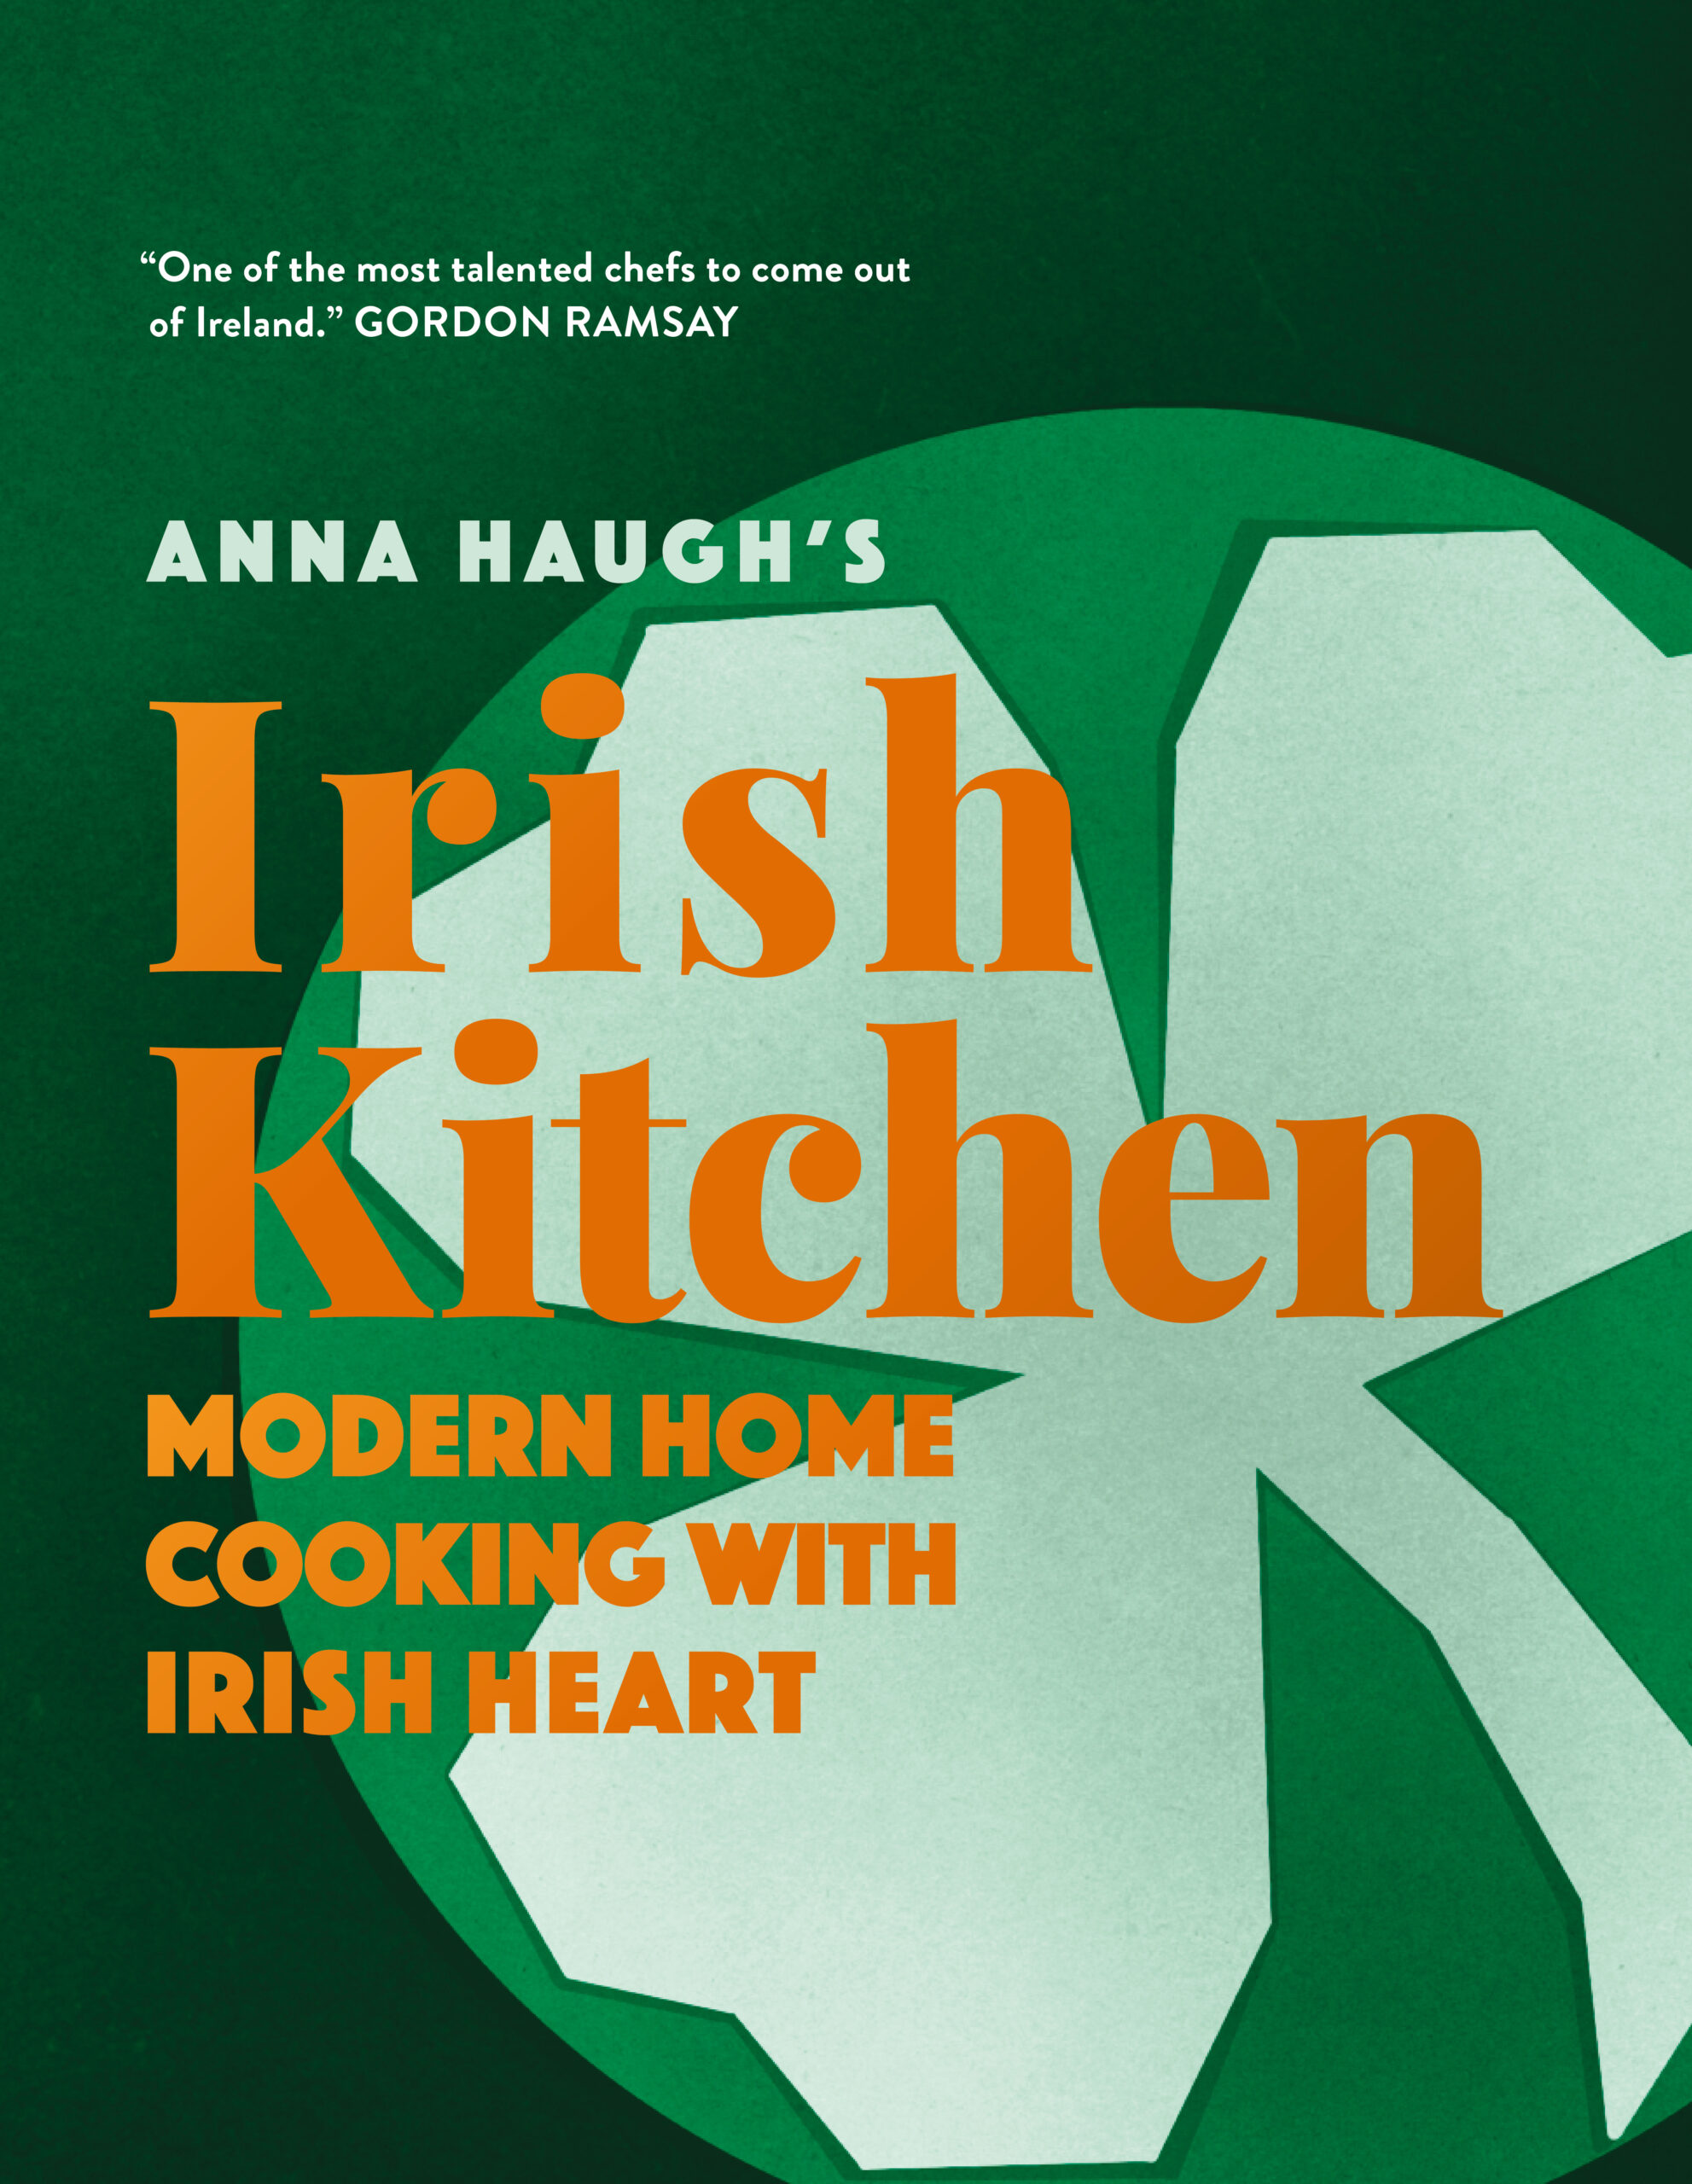 Anna Haugh’s Irish Kitchen